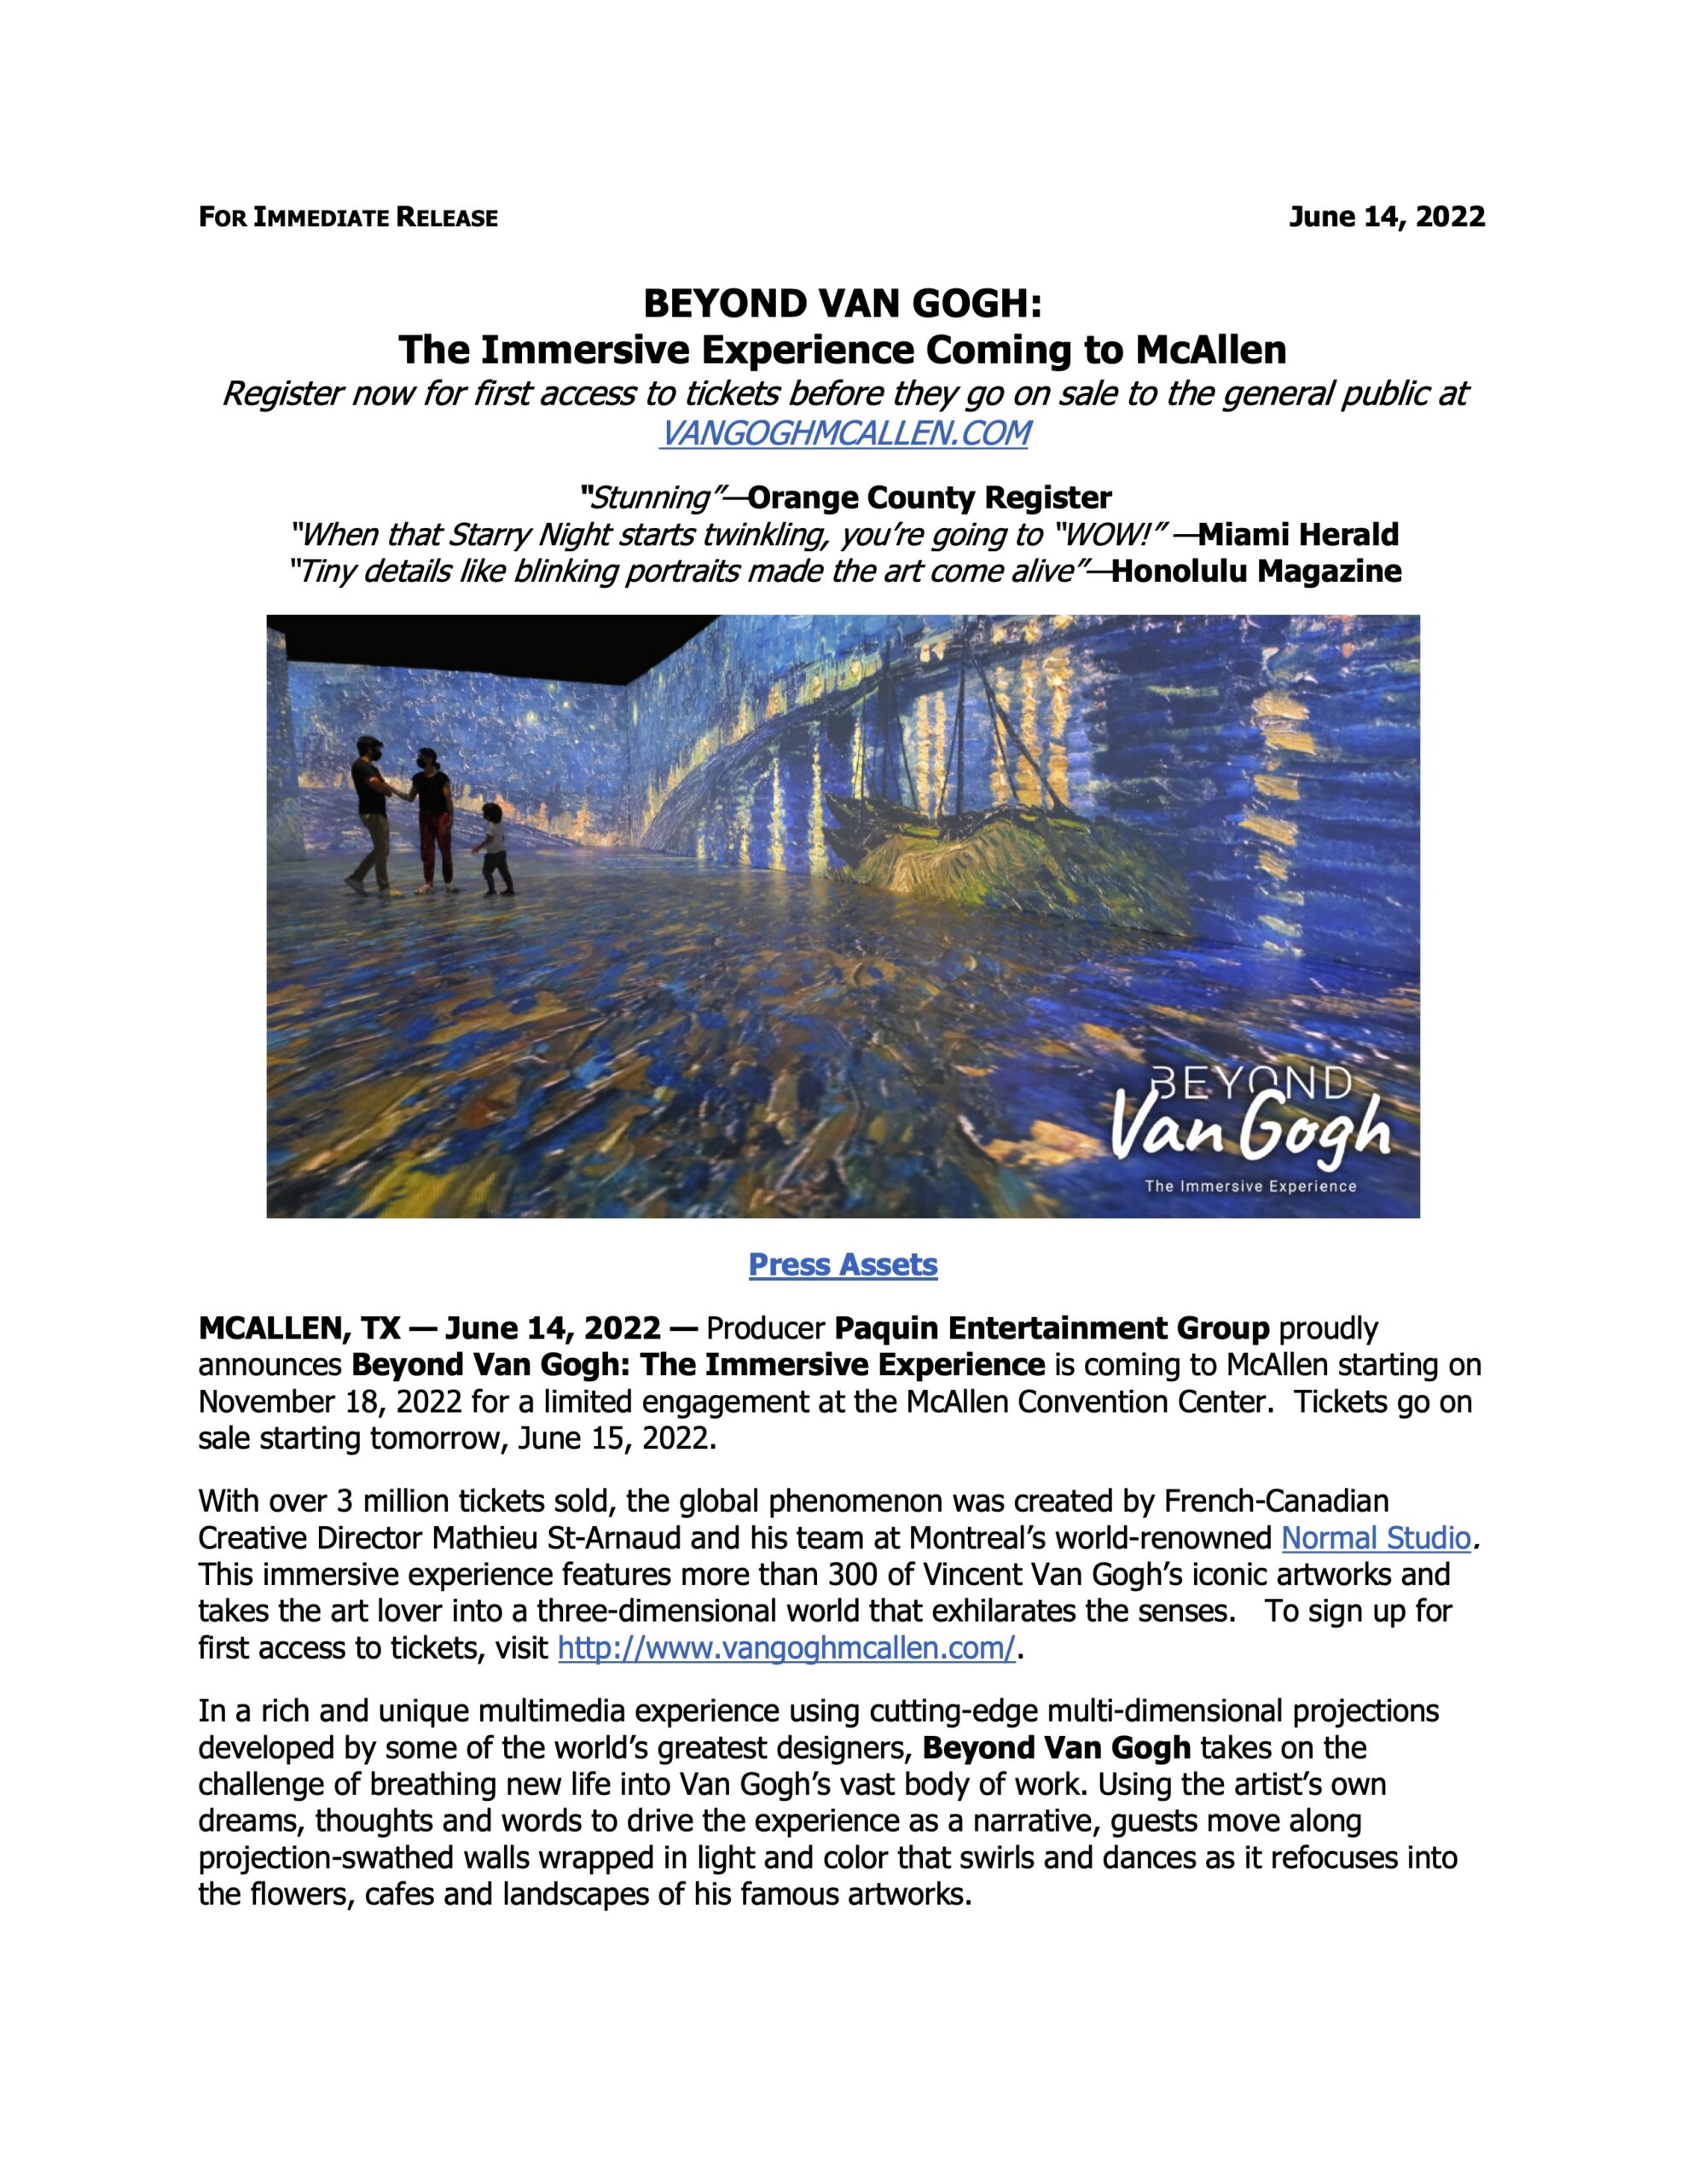 Beyond Van Gogh Tix on sale June 15 McAllen Nov18 PR 06142022 1 scaled Mcallen Convention Center | McAllen Performing Arts Center